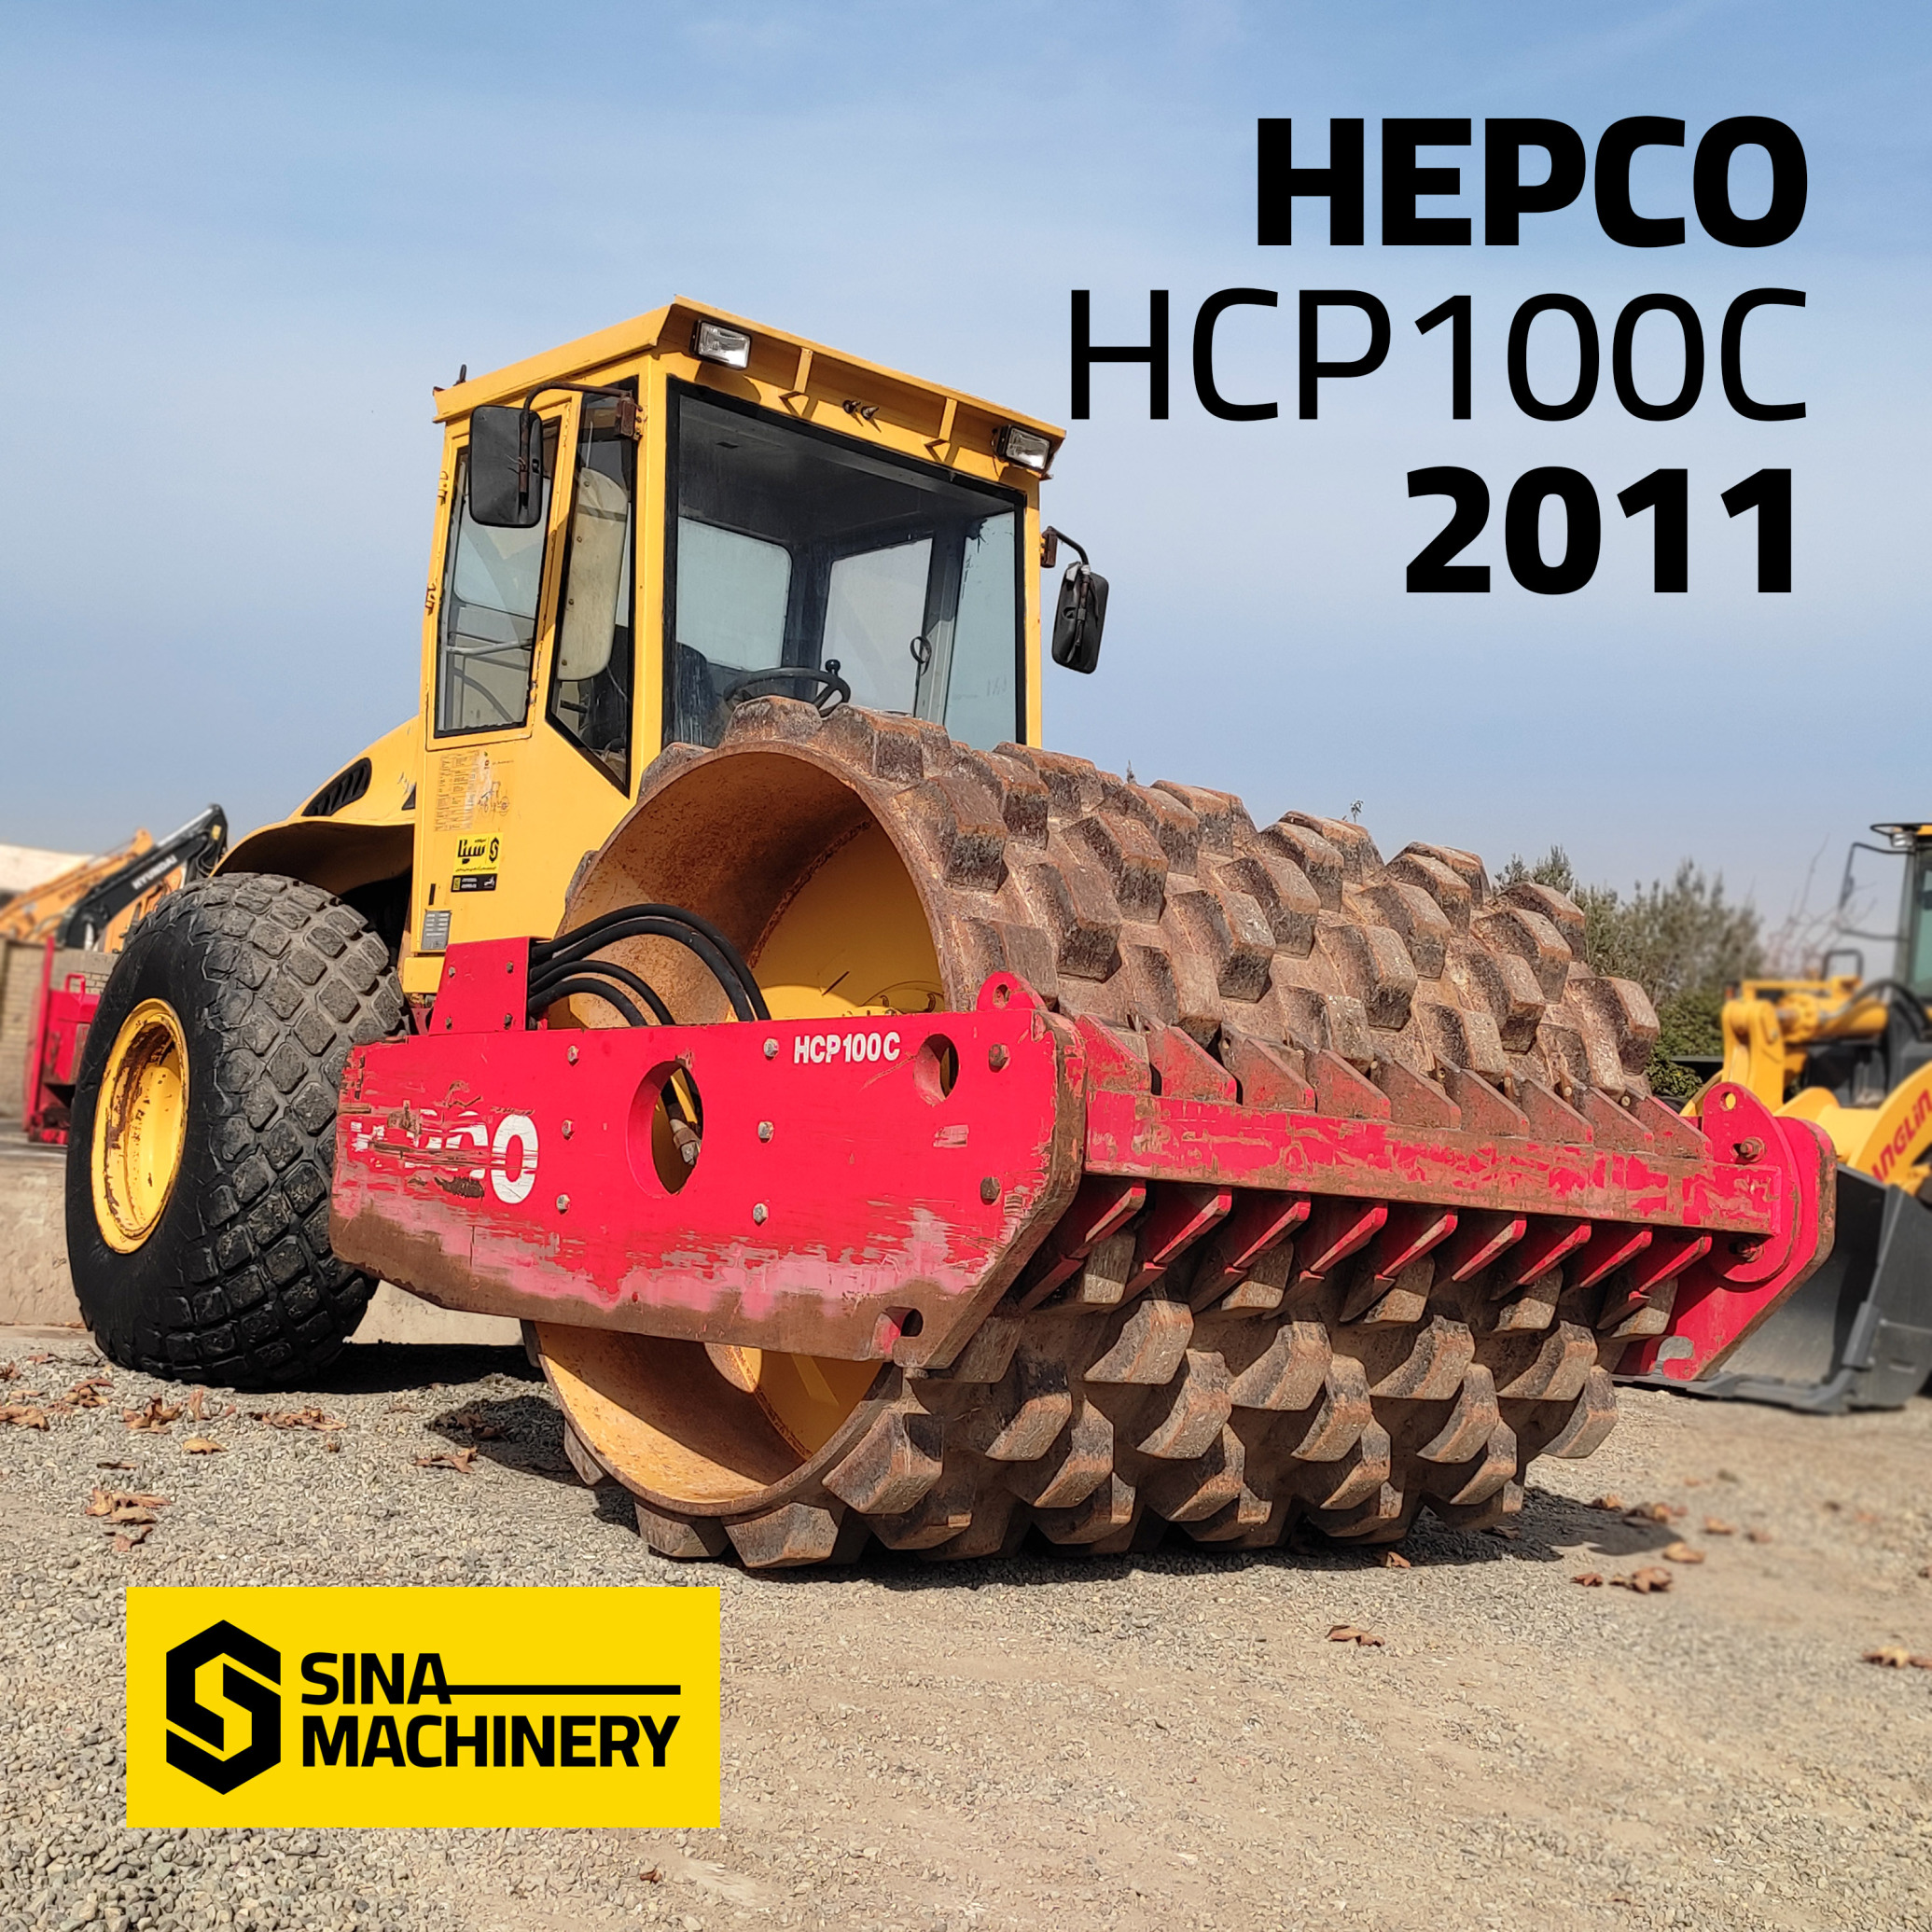  غلتک هپکو HC100 پاچه بزی (غلطک موشکی) HEPCO Construction Combination Roller 